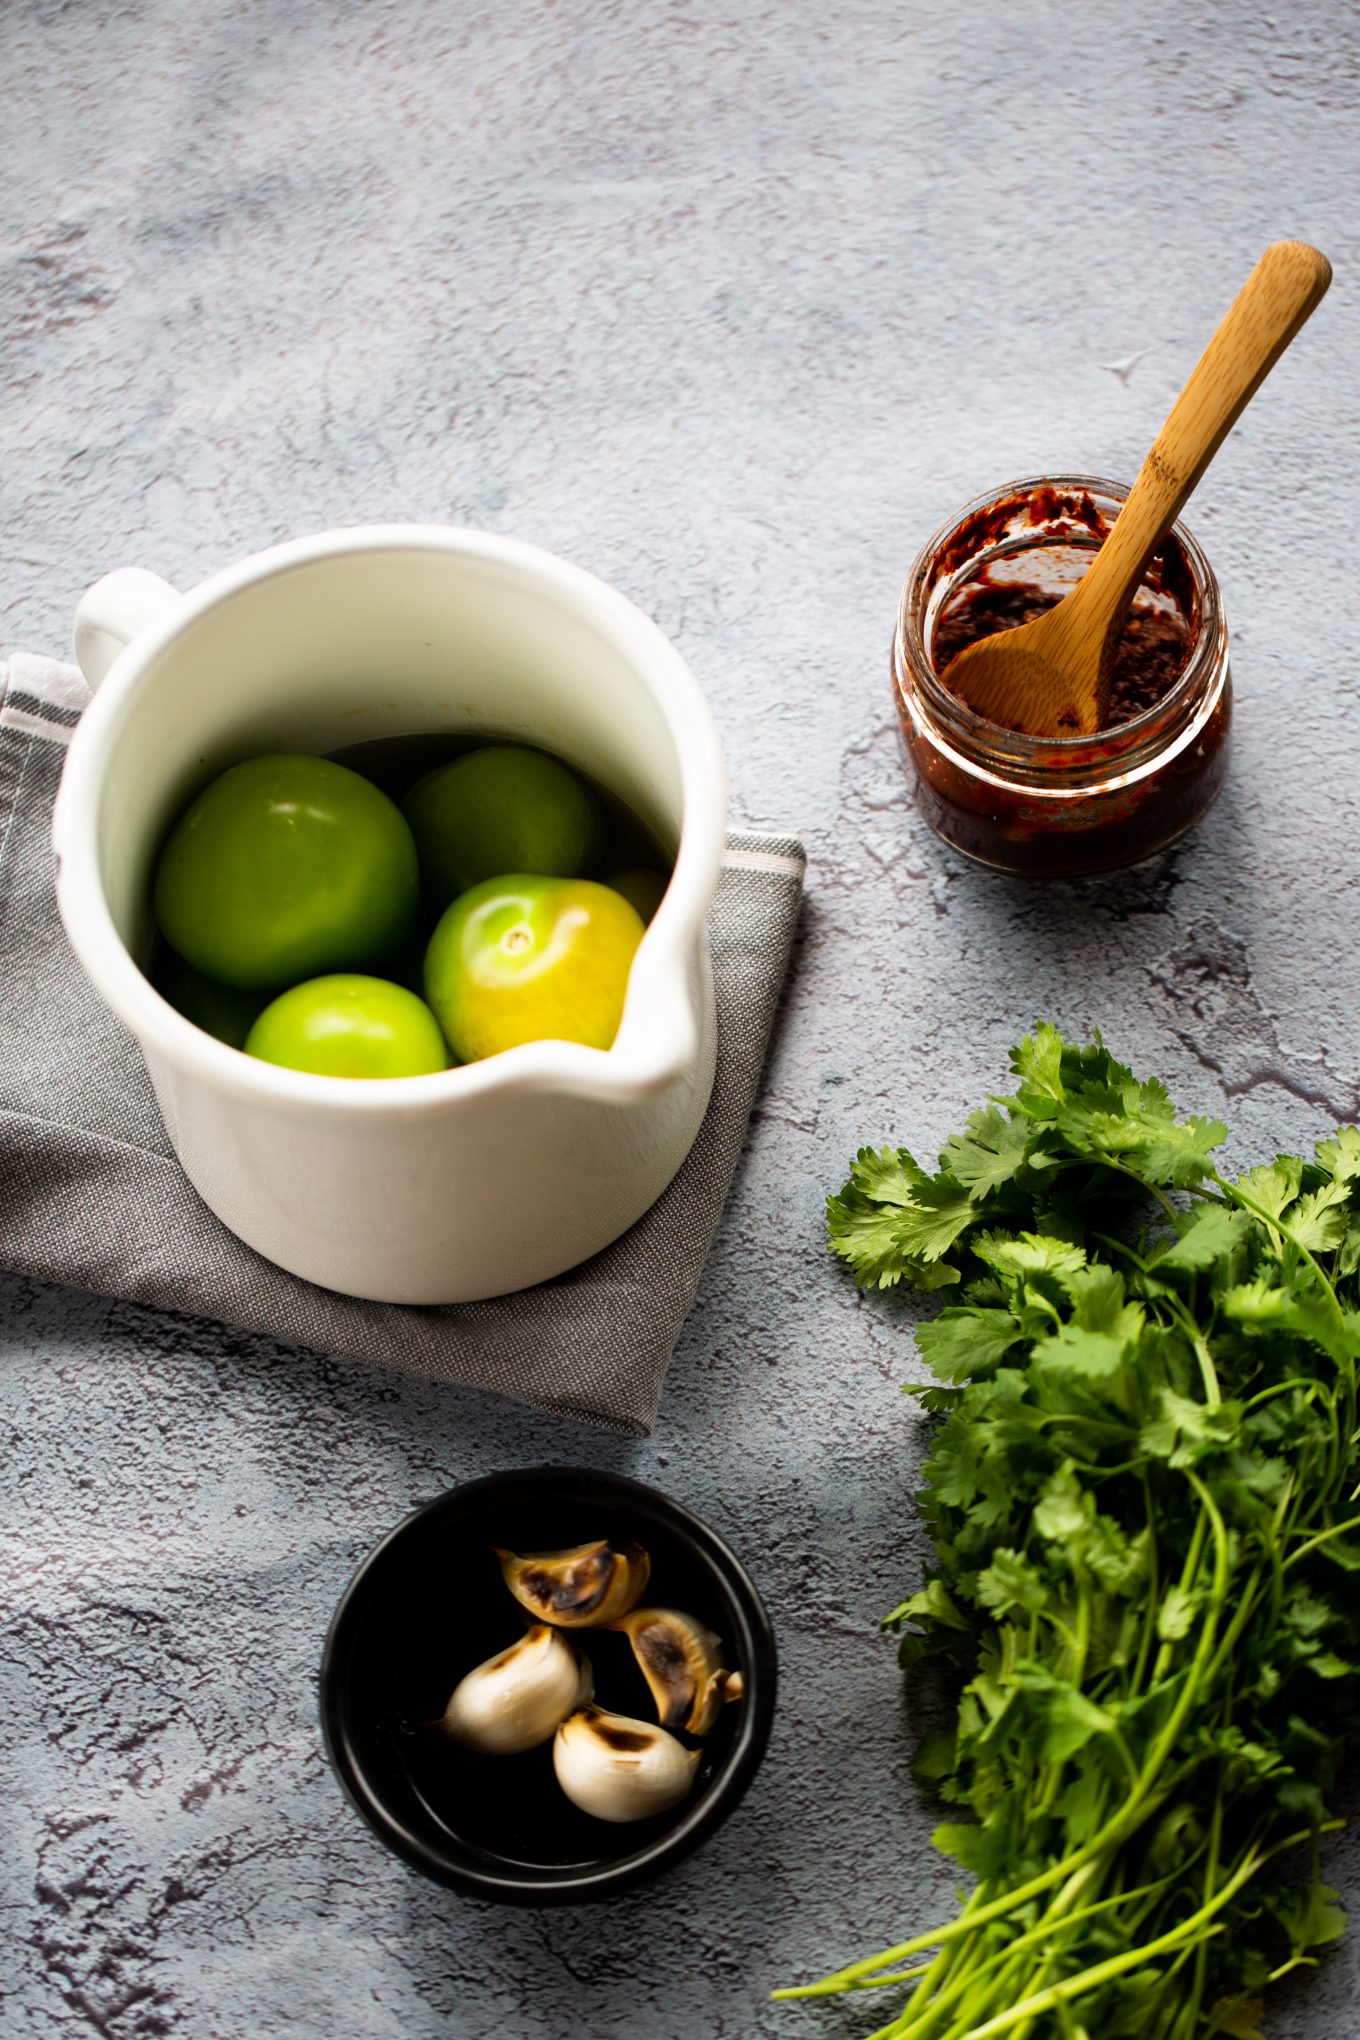 ingredientes para hacer salsa mexicana verde con chipotle